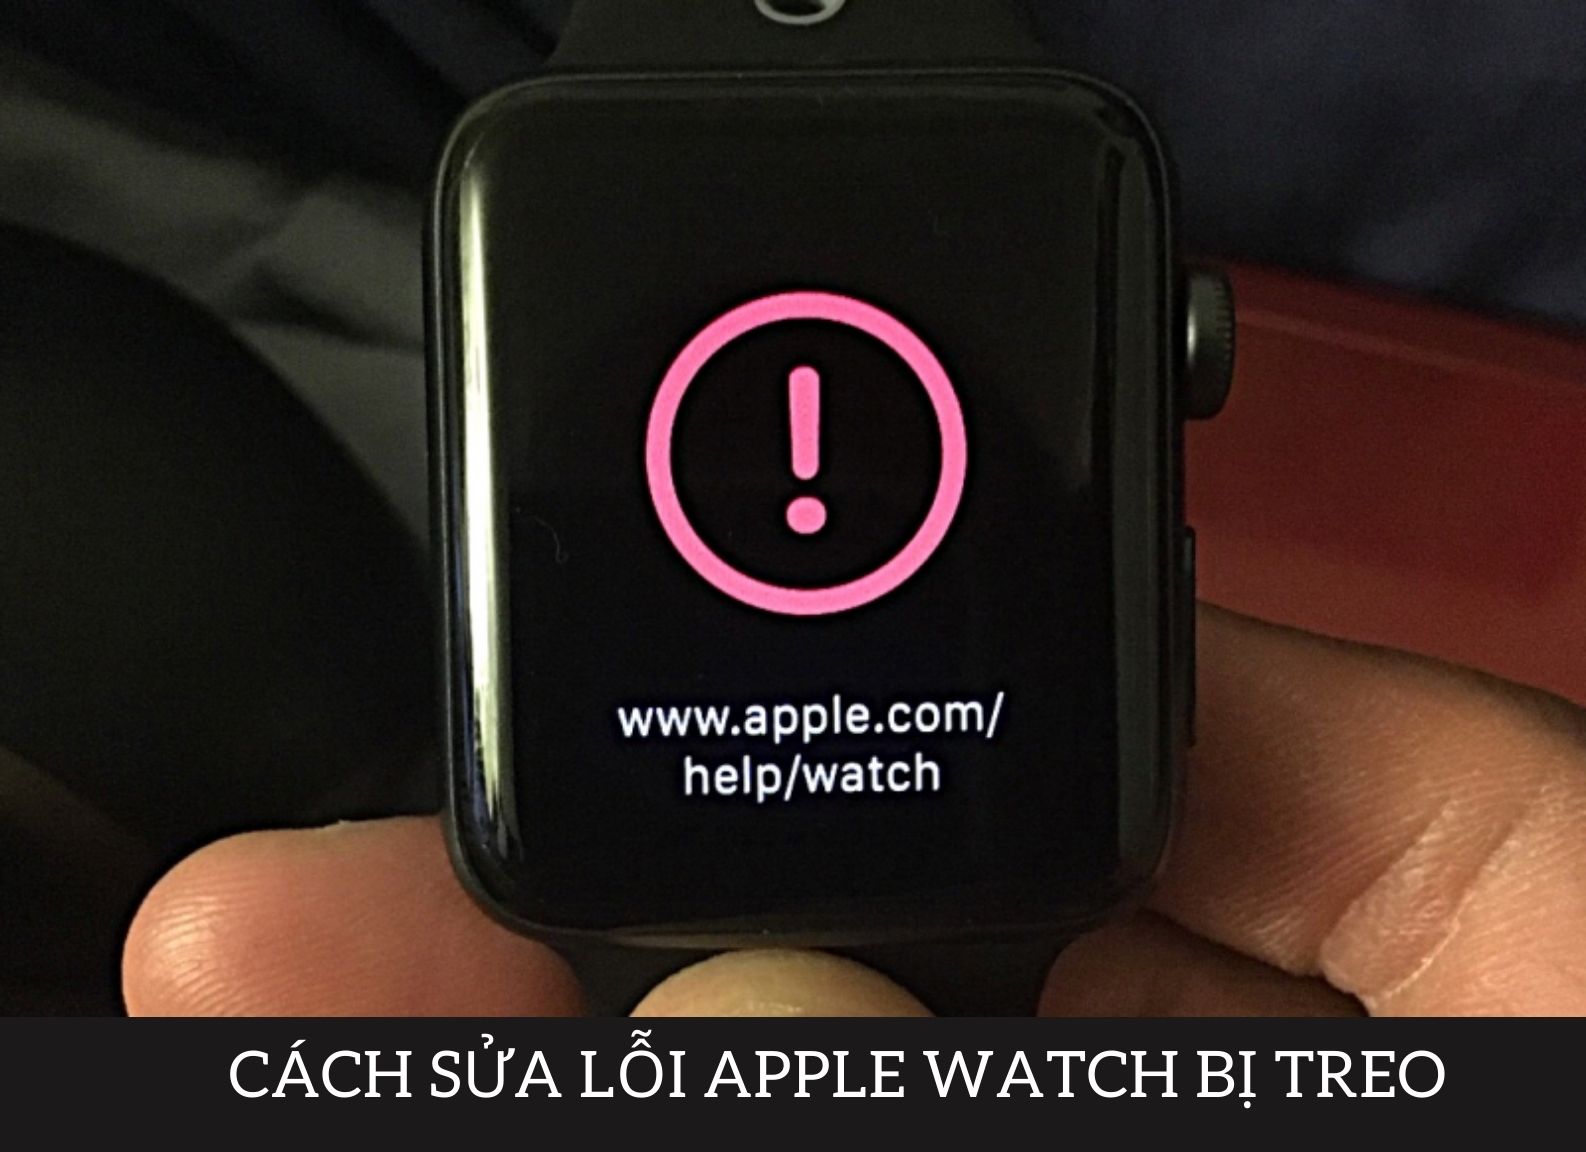 Cách sửa Apple Watch bị treo táo, hiện dấu chấm thang